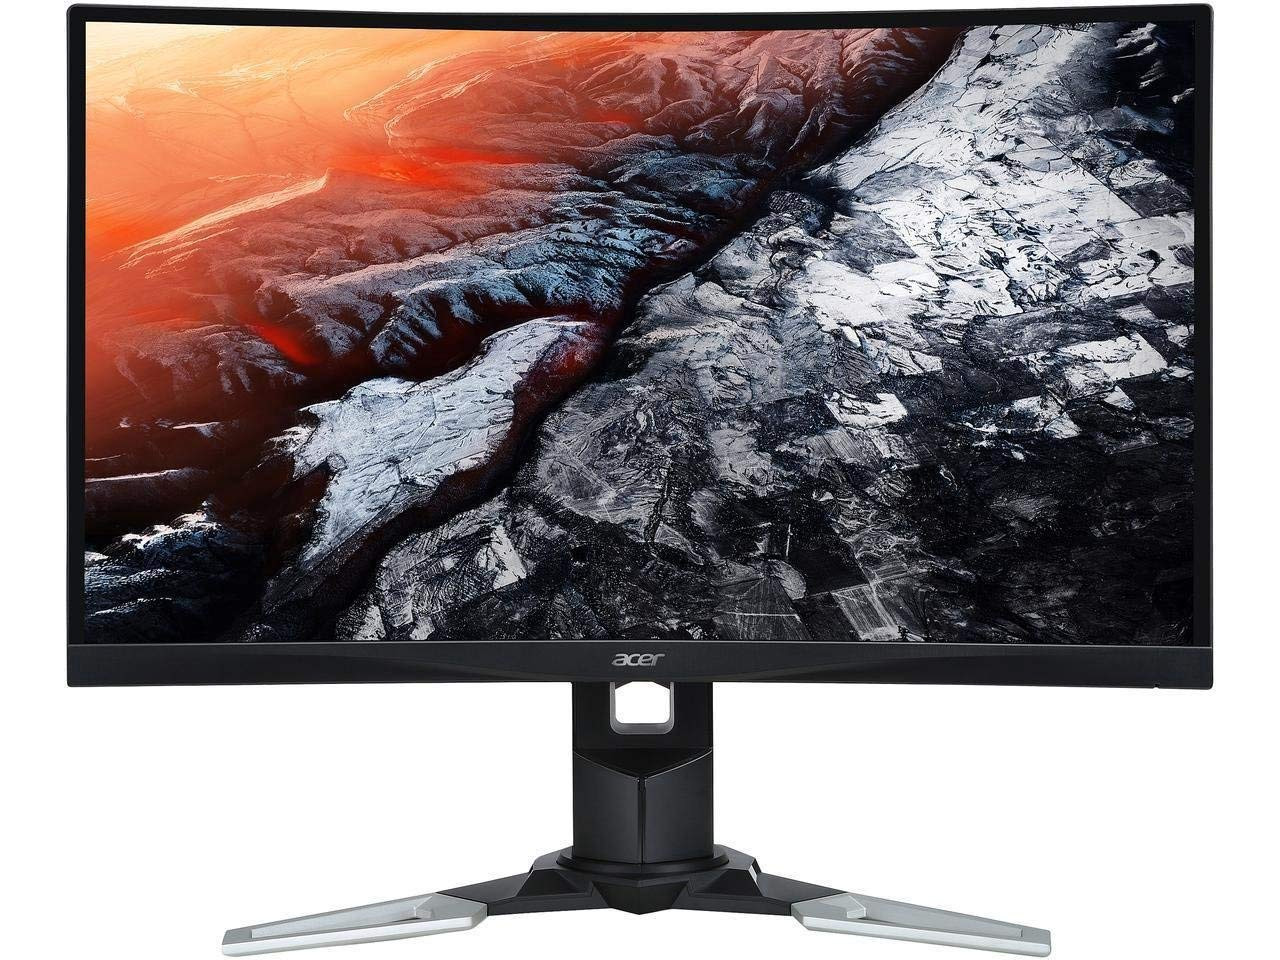 Společnost Acer představuje zakřivené herní monitory řady XZ1 s technologií FreeSync